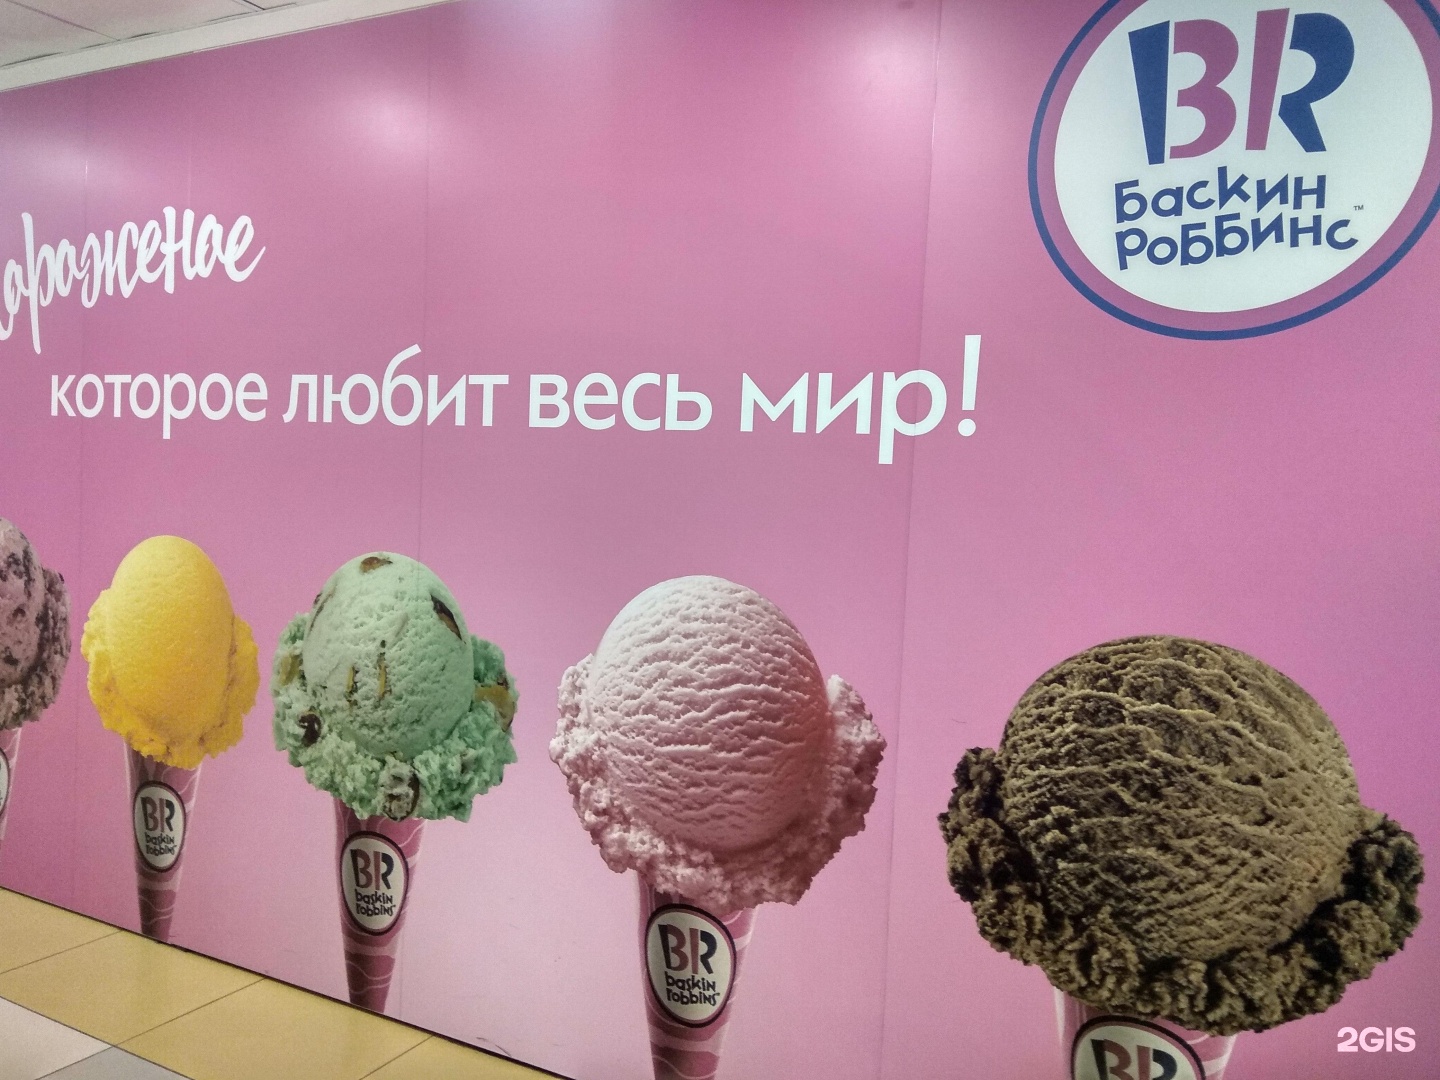 Баскин роббинс мороженое фото